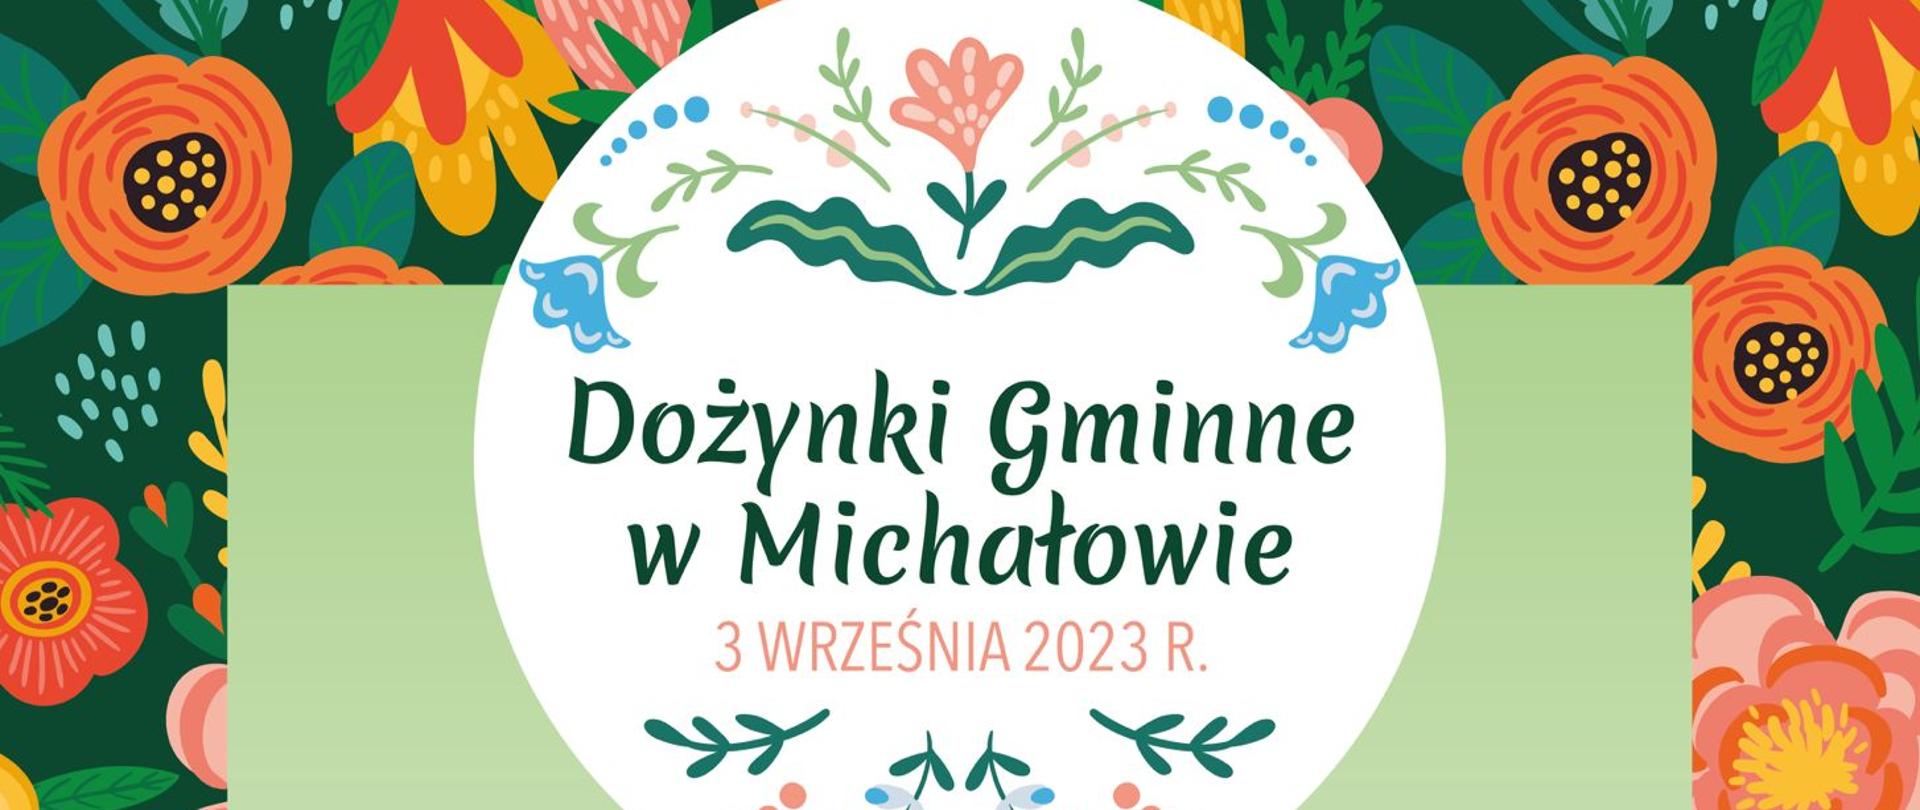 Dożynki Gminne w Michałowie - 3 września 2023 rok